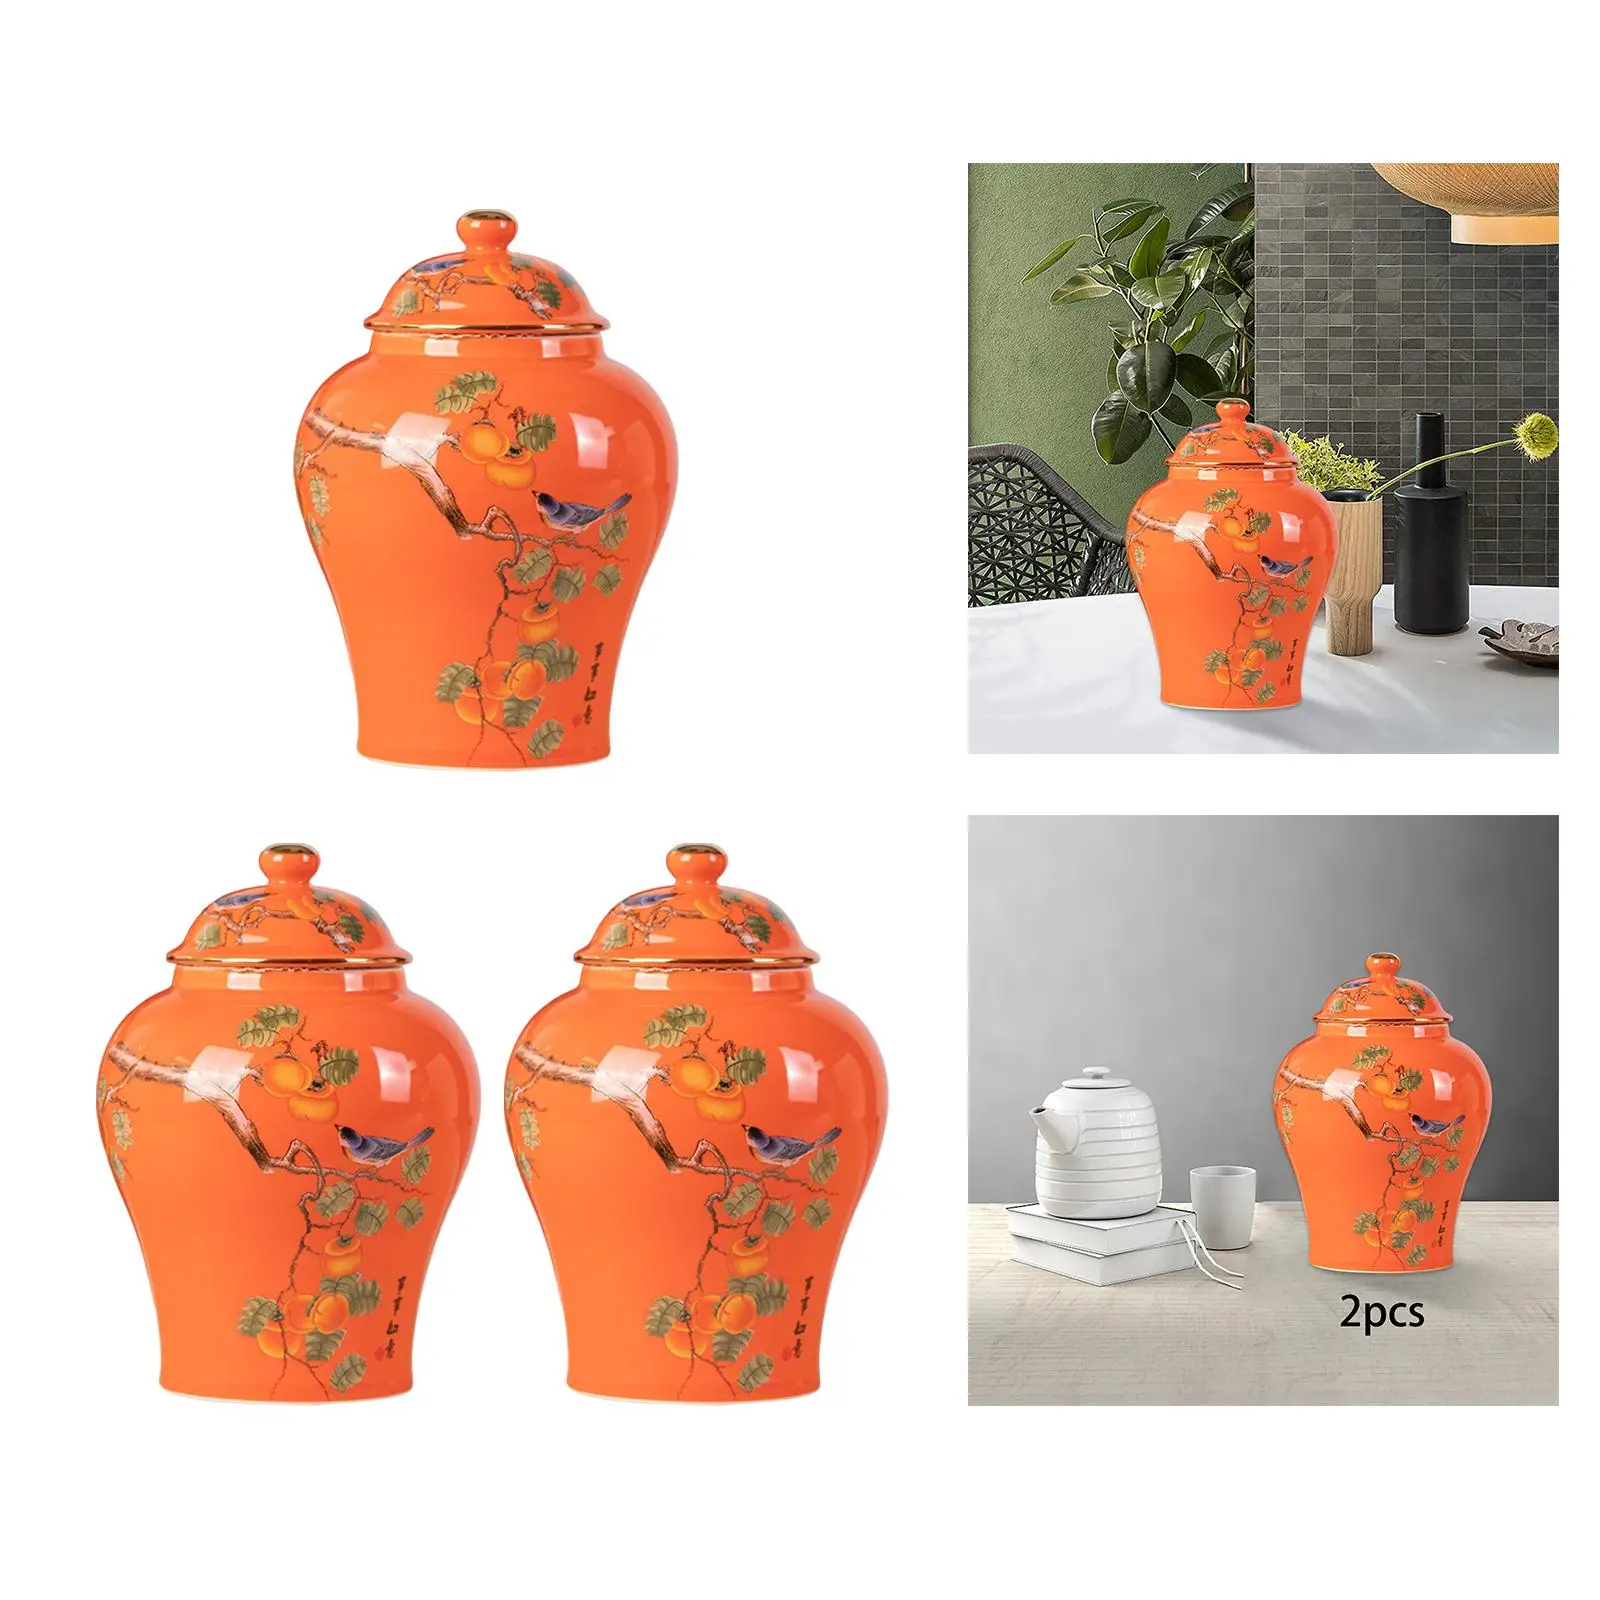 Ceramic Ginger Jars Porcelain Storage Jar Tea Canister Centerpiece Table Flower Vase for Home Office Shelf Decor Collection